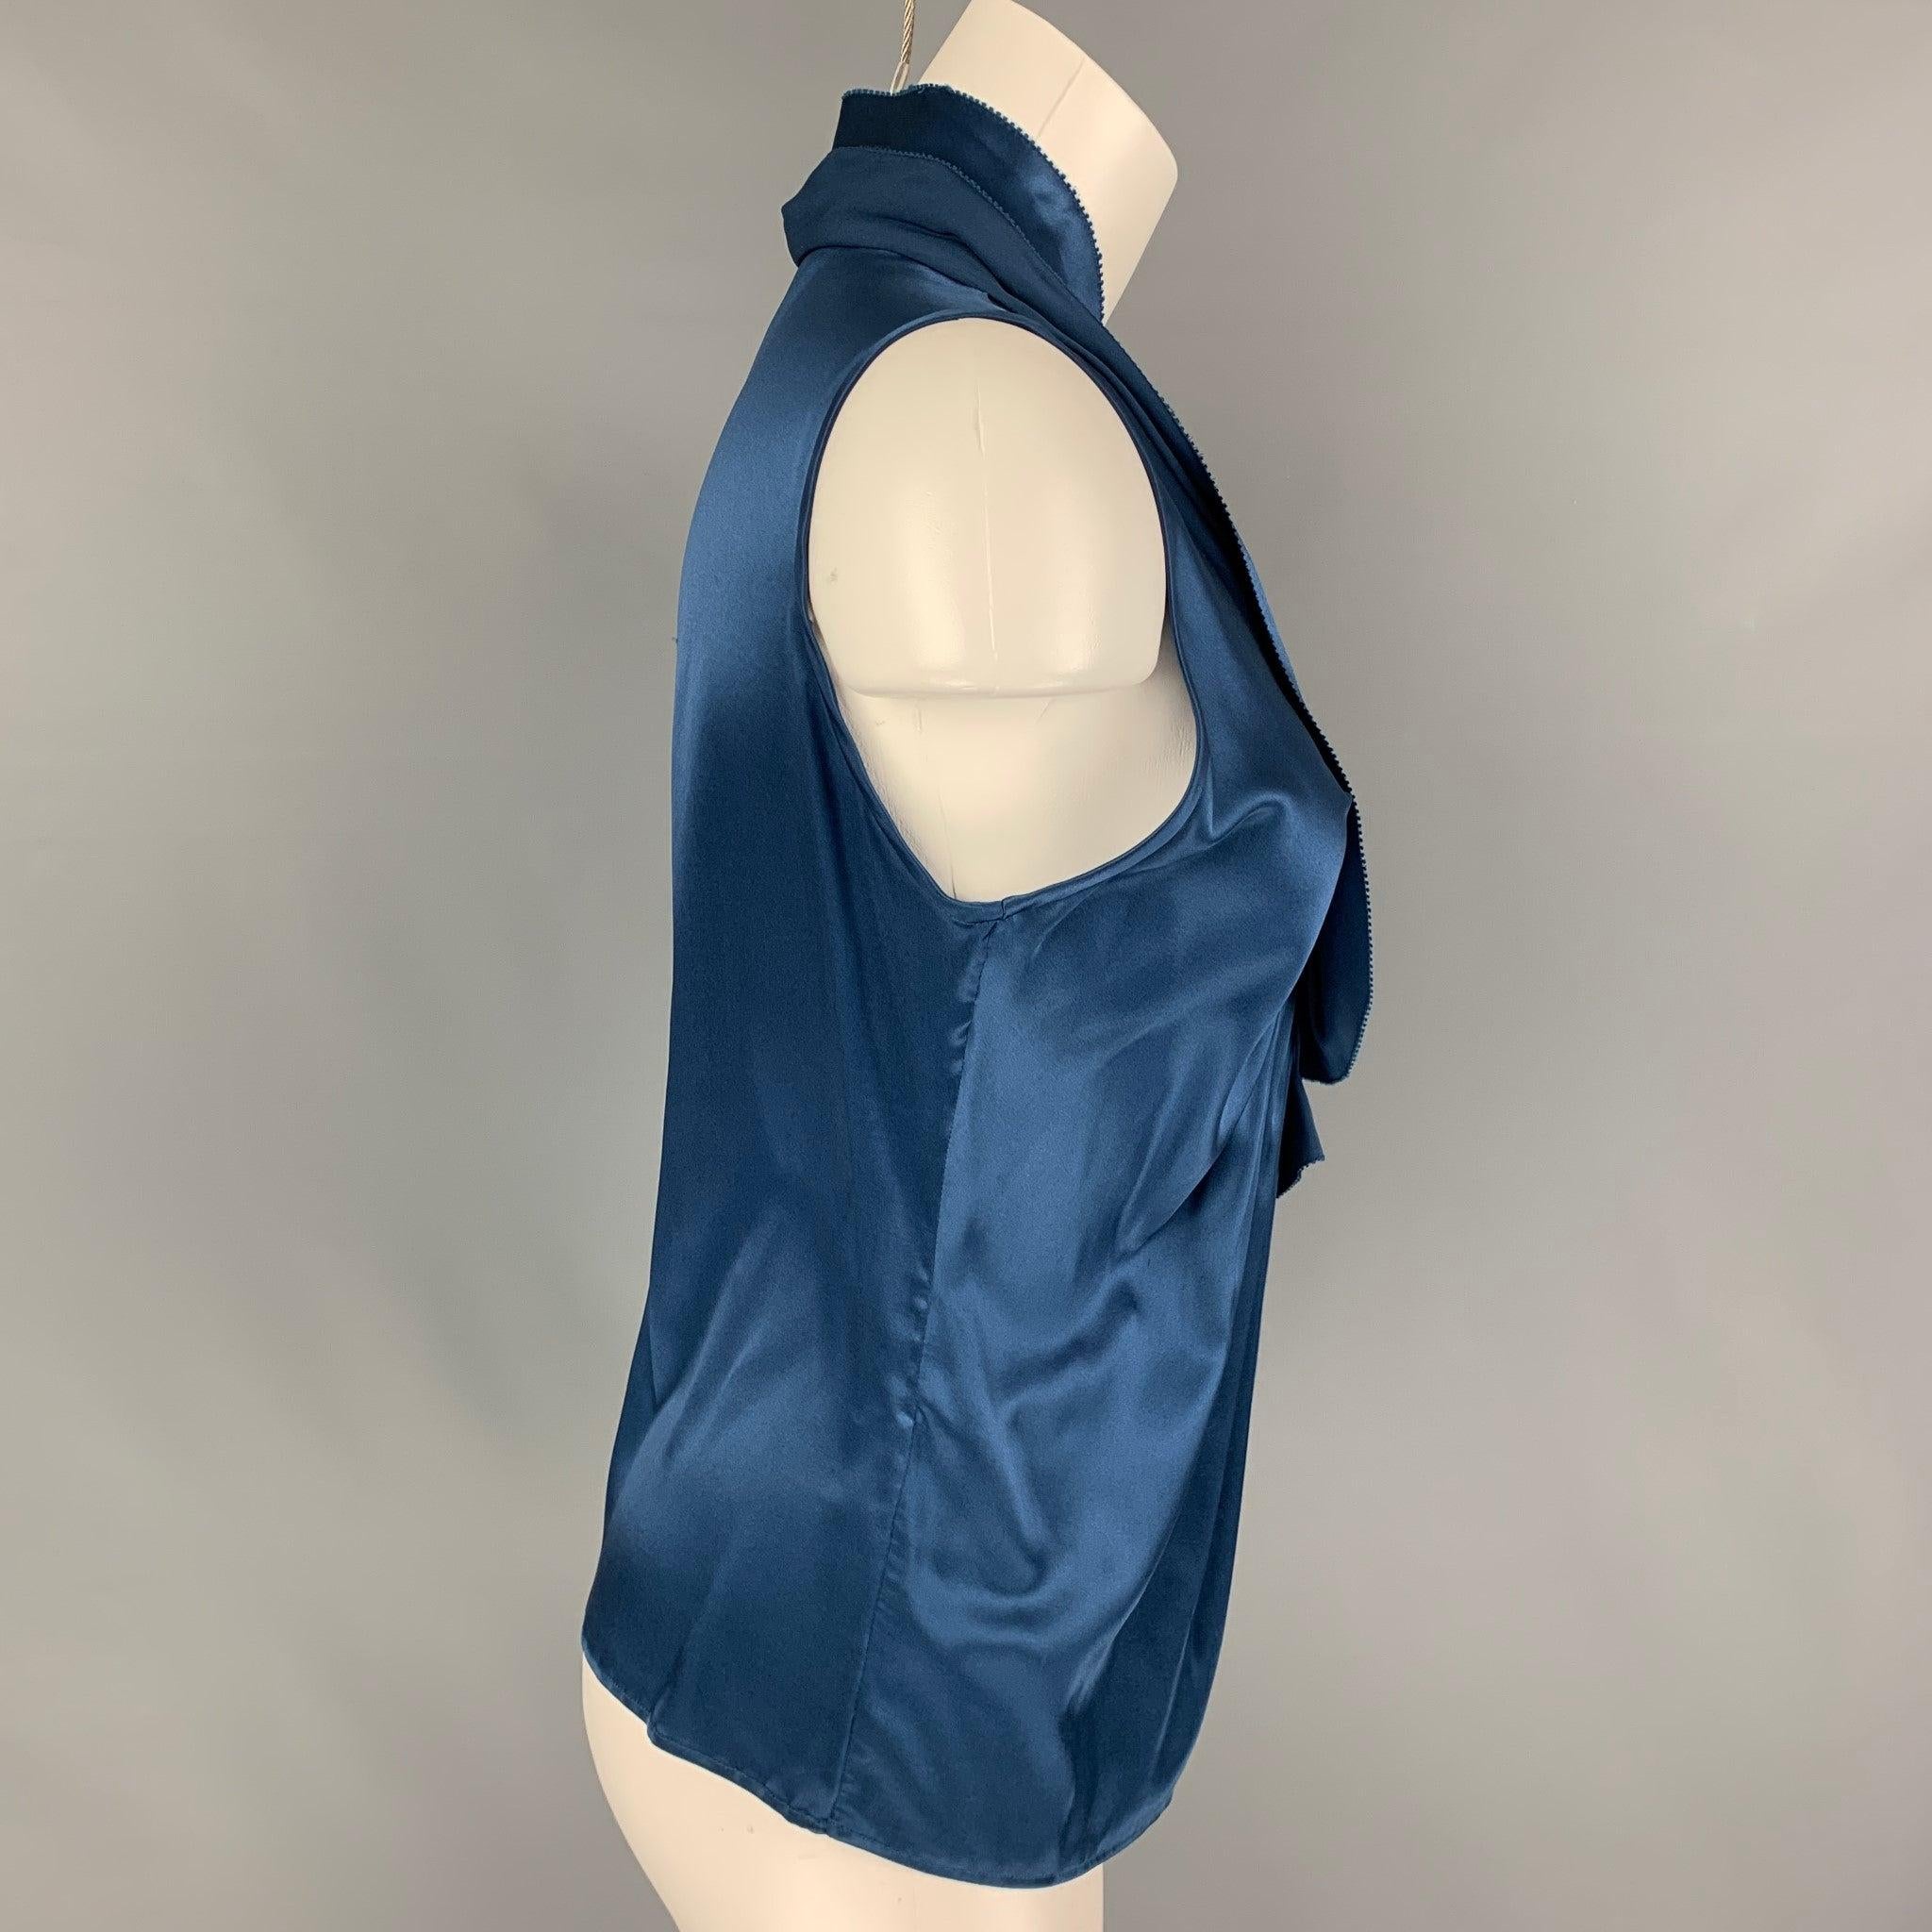 La blouse ETRO est en soie bleue et présente un motif à volants, une encolure en V et un style sans manches. Fabriquées en Italie.
Très bien
Etat d'occasion. 

Marqué :   40 

Mesures : 
 
Épaule : 12,5 pouces  Poitrine : 28 pouces  Longueur : 21,5